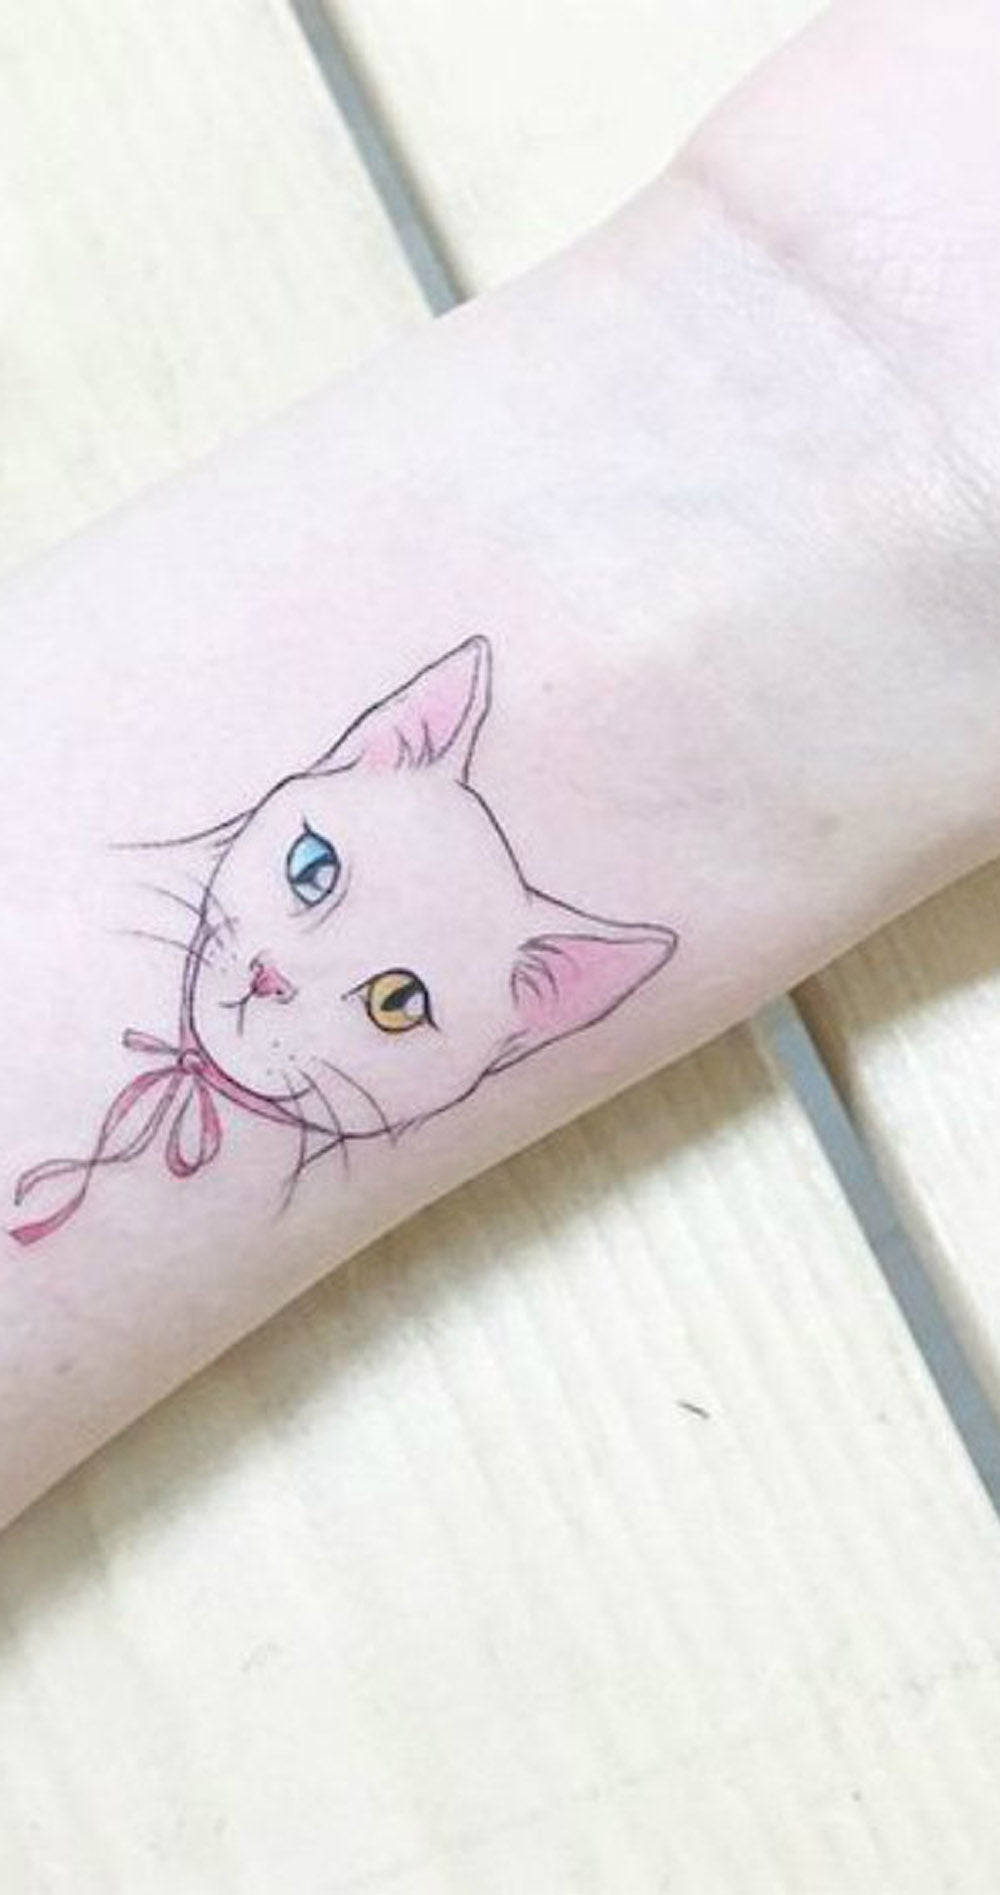 Watercolor Vintage Kitty Cat Wrist Tattoo Ideas for Women - www.MyBodiArt.com